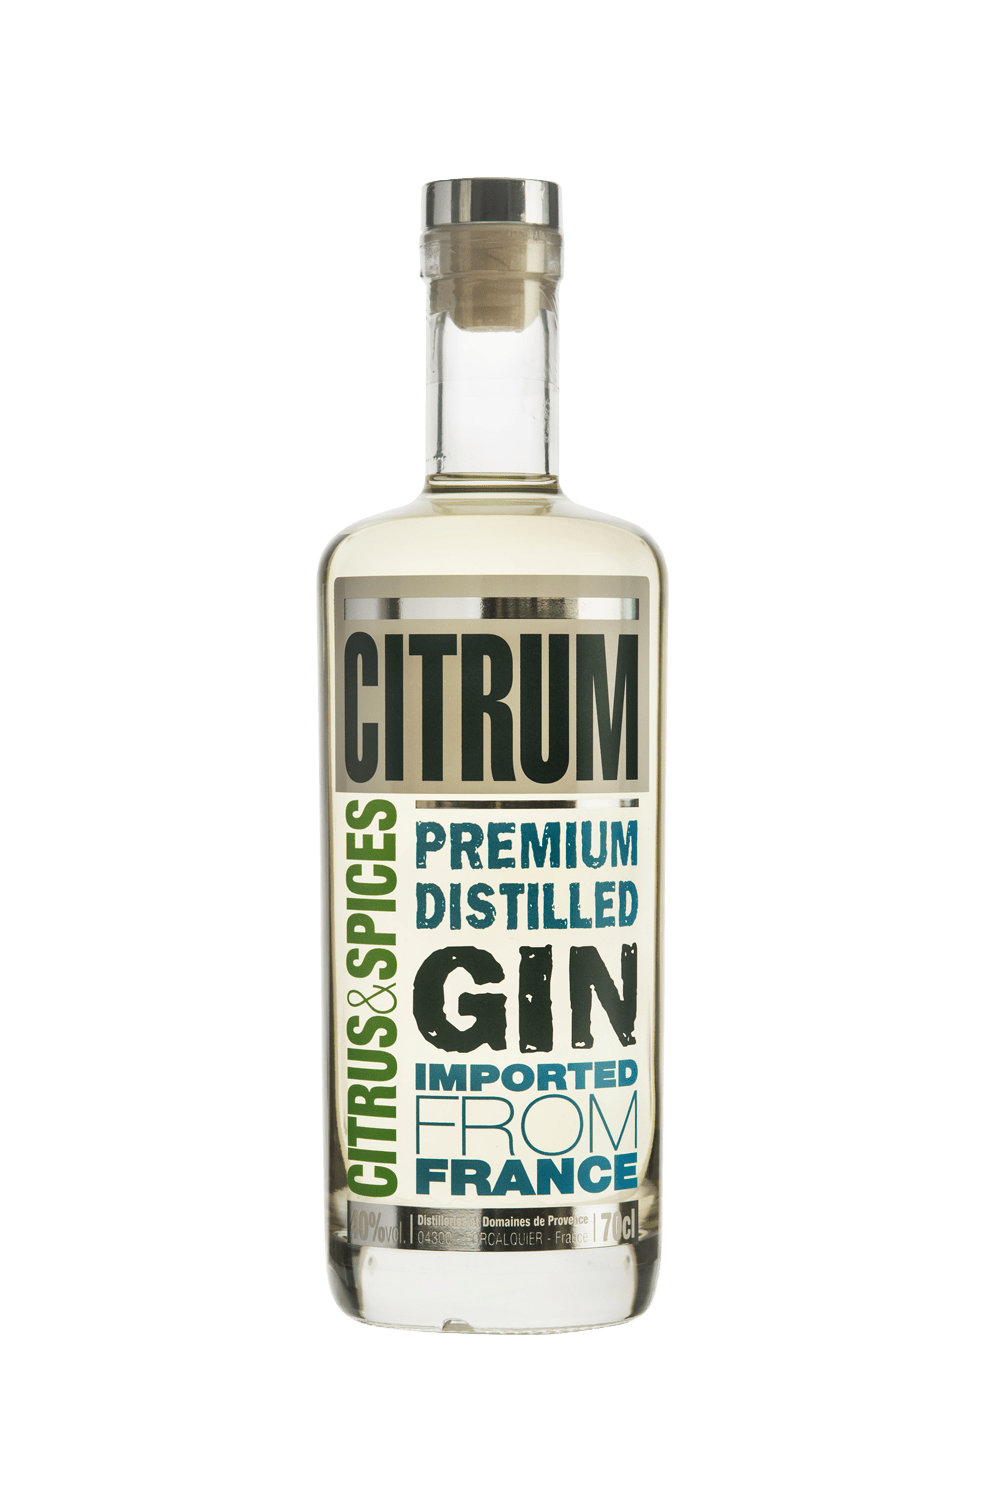 Citrum Premium Gin